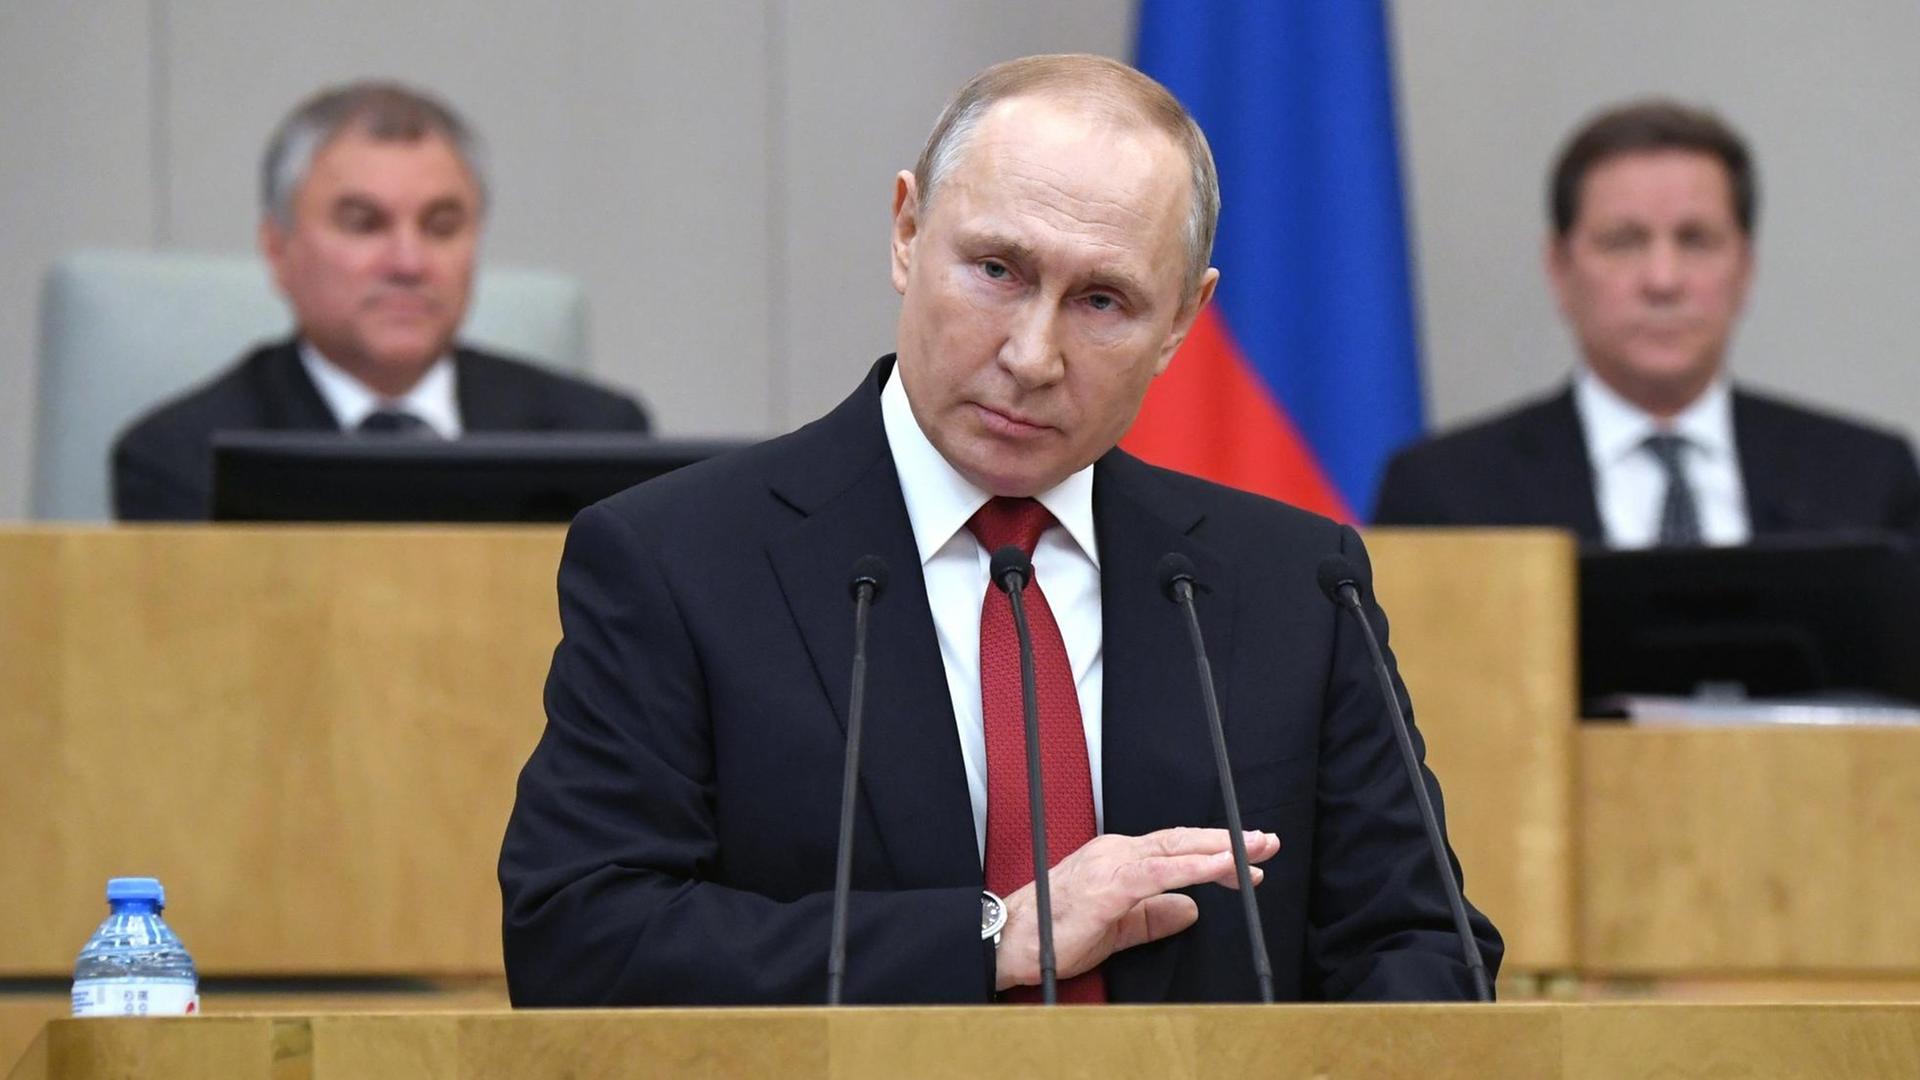 Der Präsident von dem Land Russland Wladimir Putin spricht im Parlament.